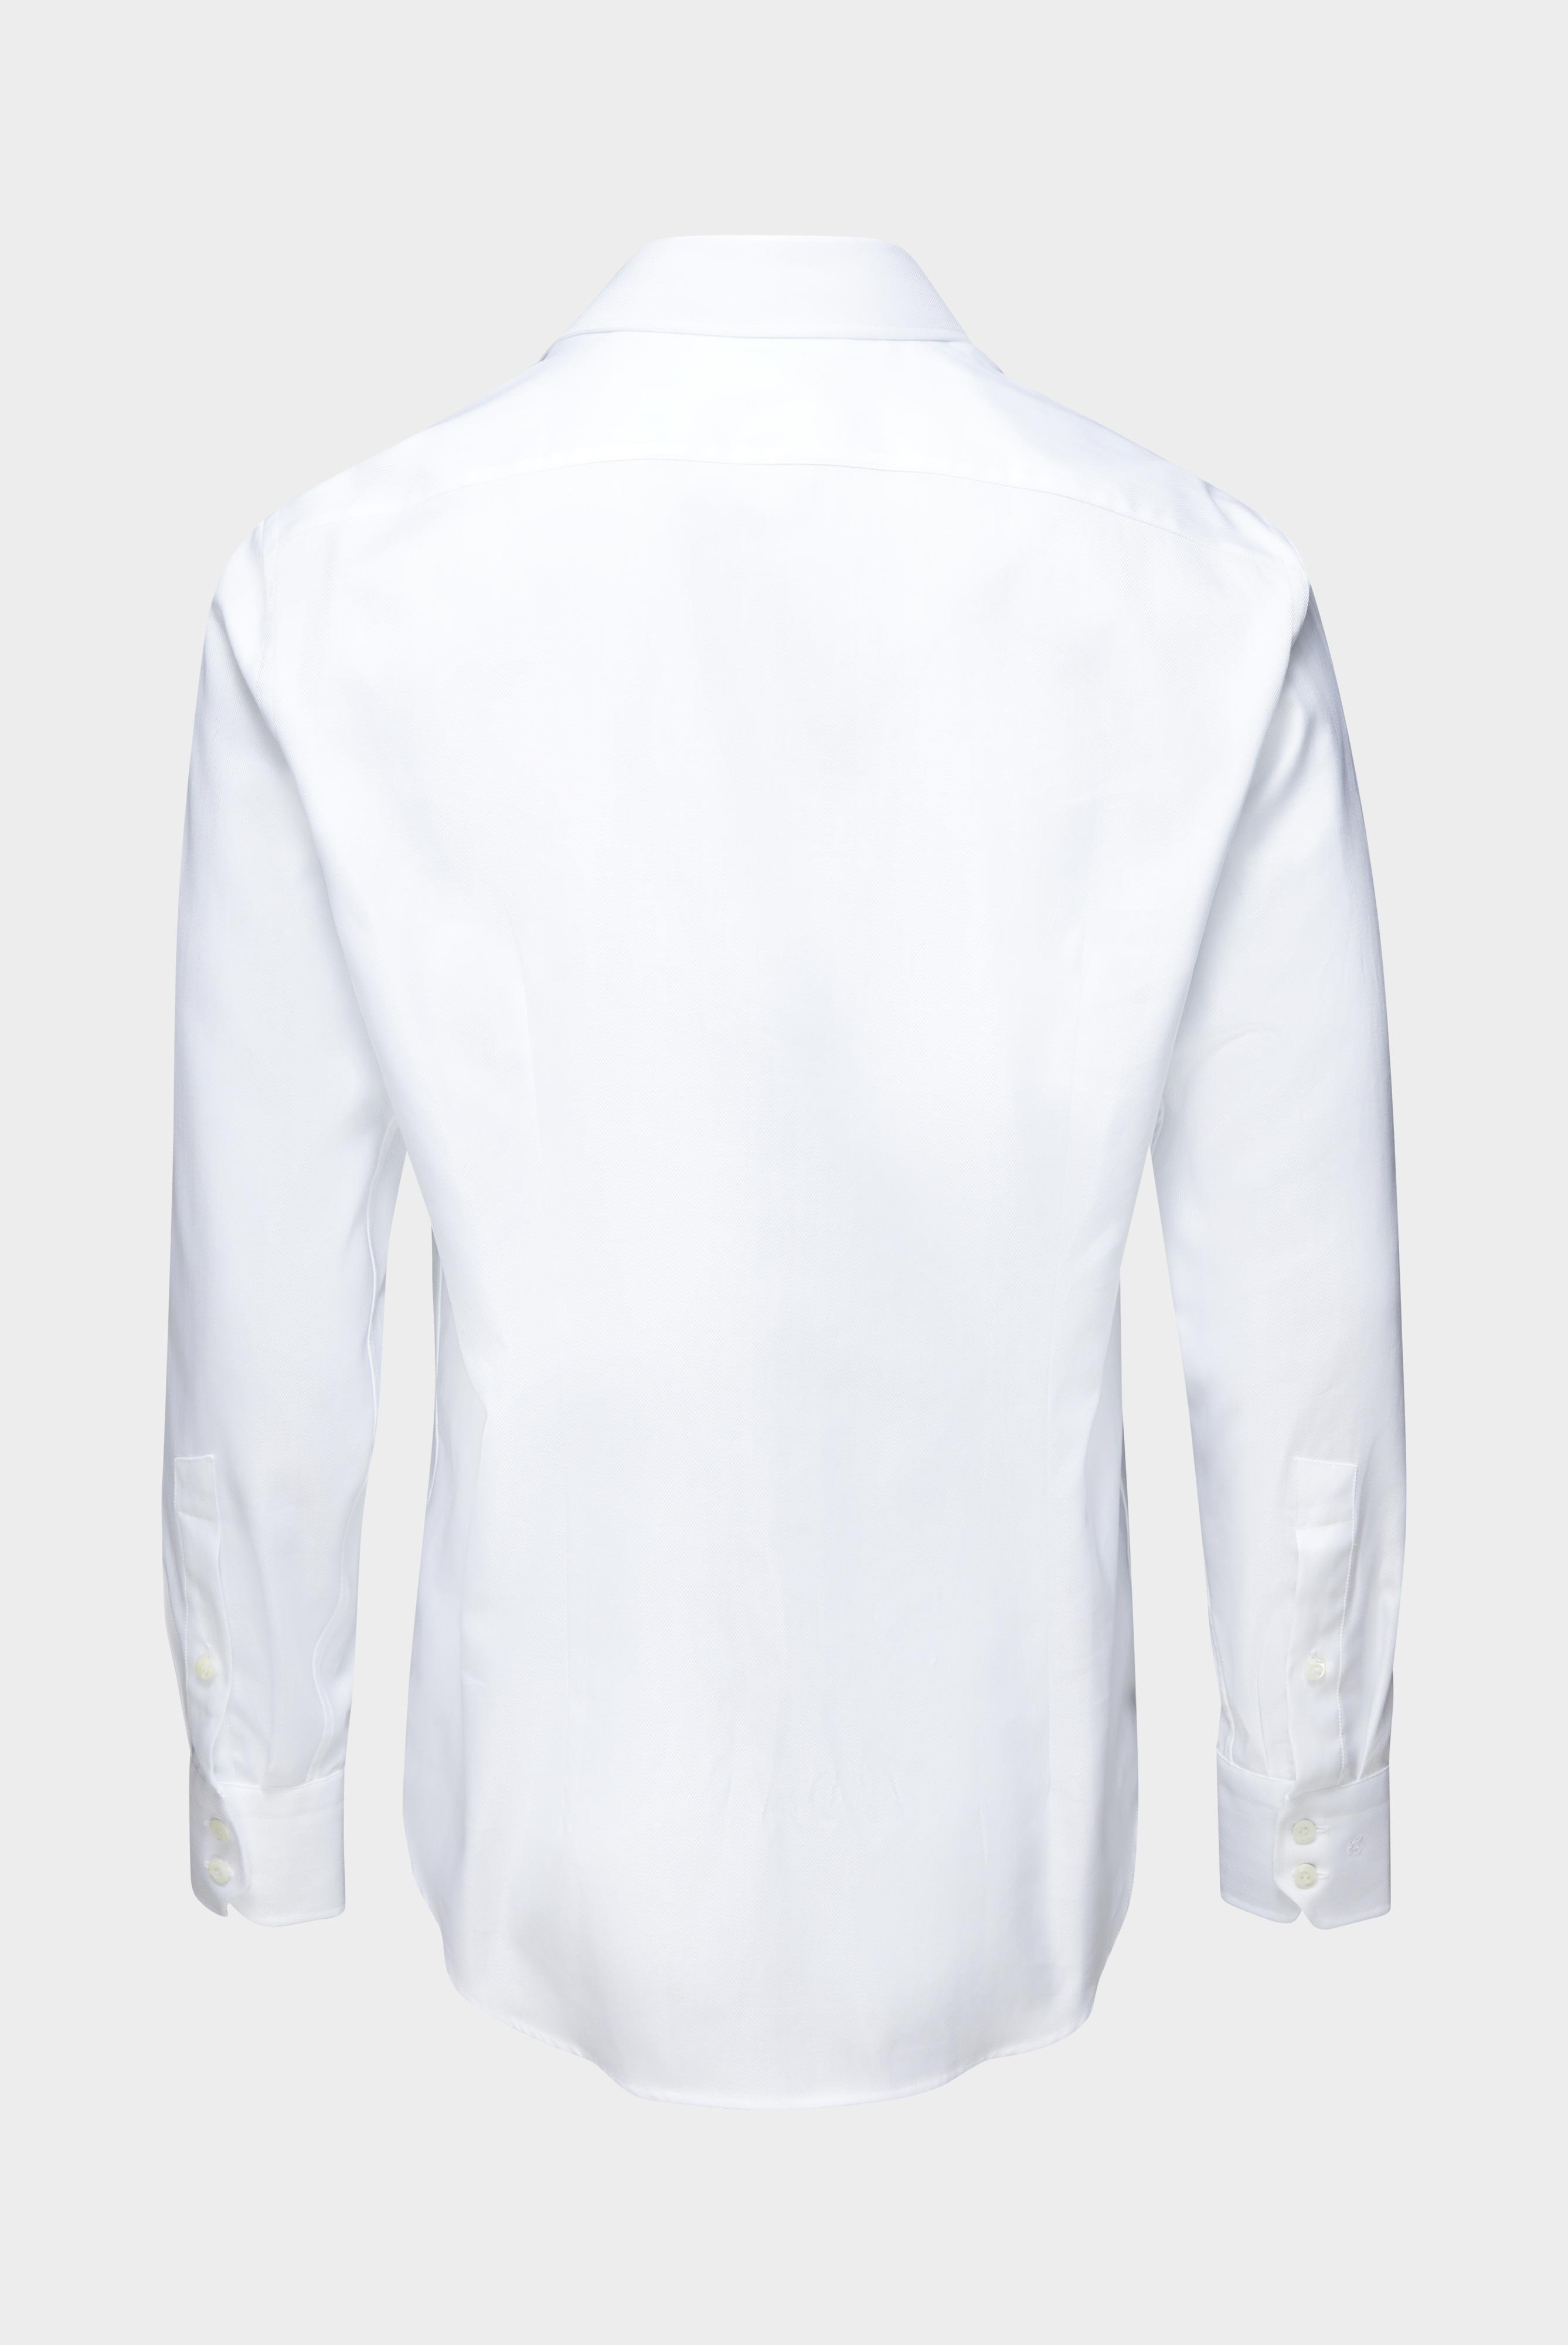 Business Hemden+Twill Hemd mit Fischgrat Tailor Fit+20.2020.AV.102501.000.39